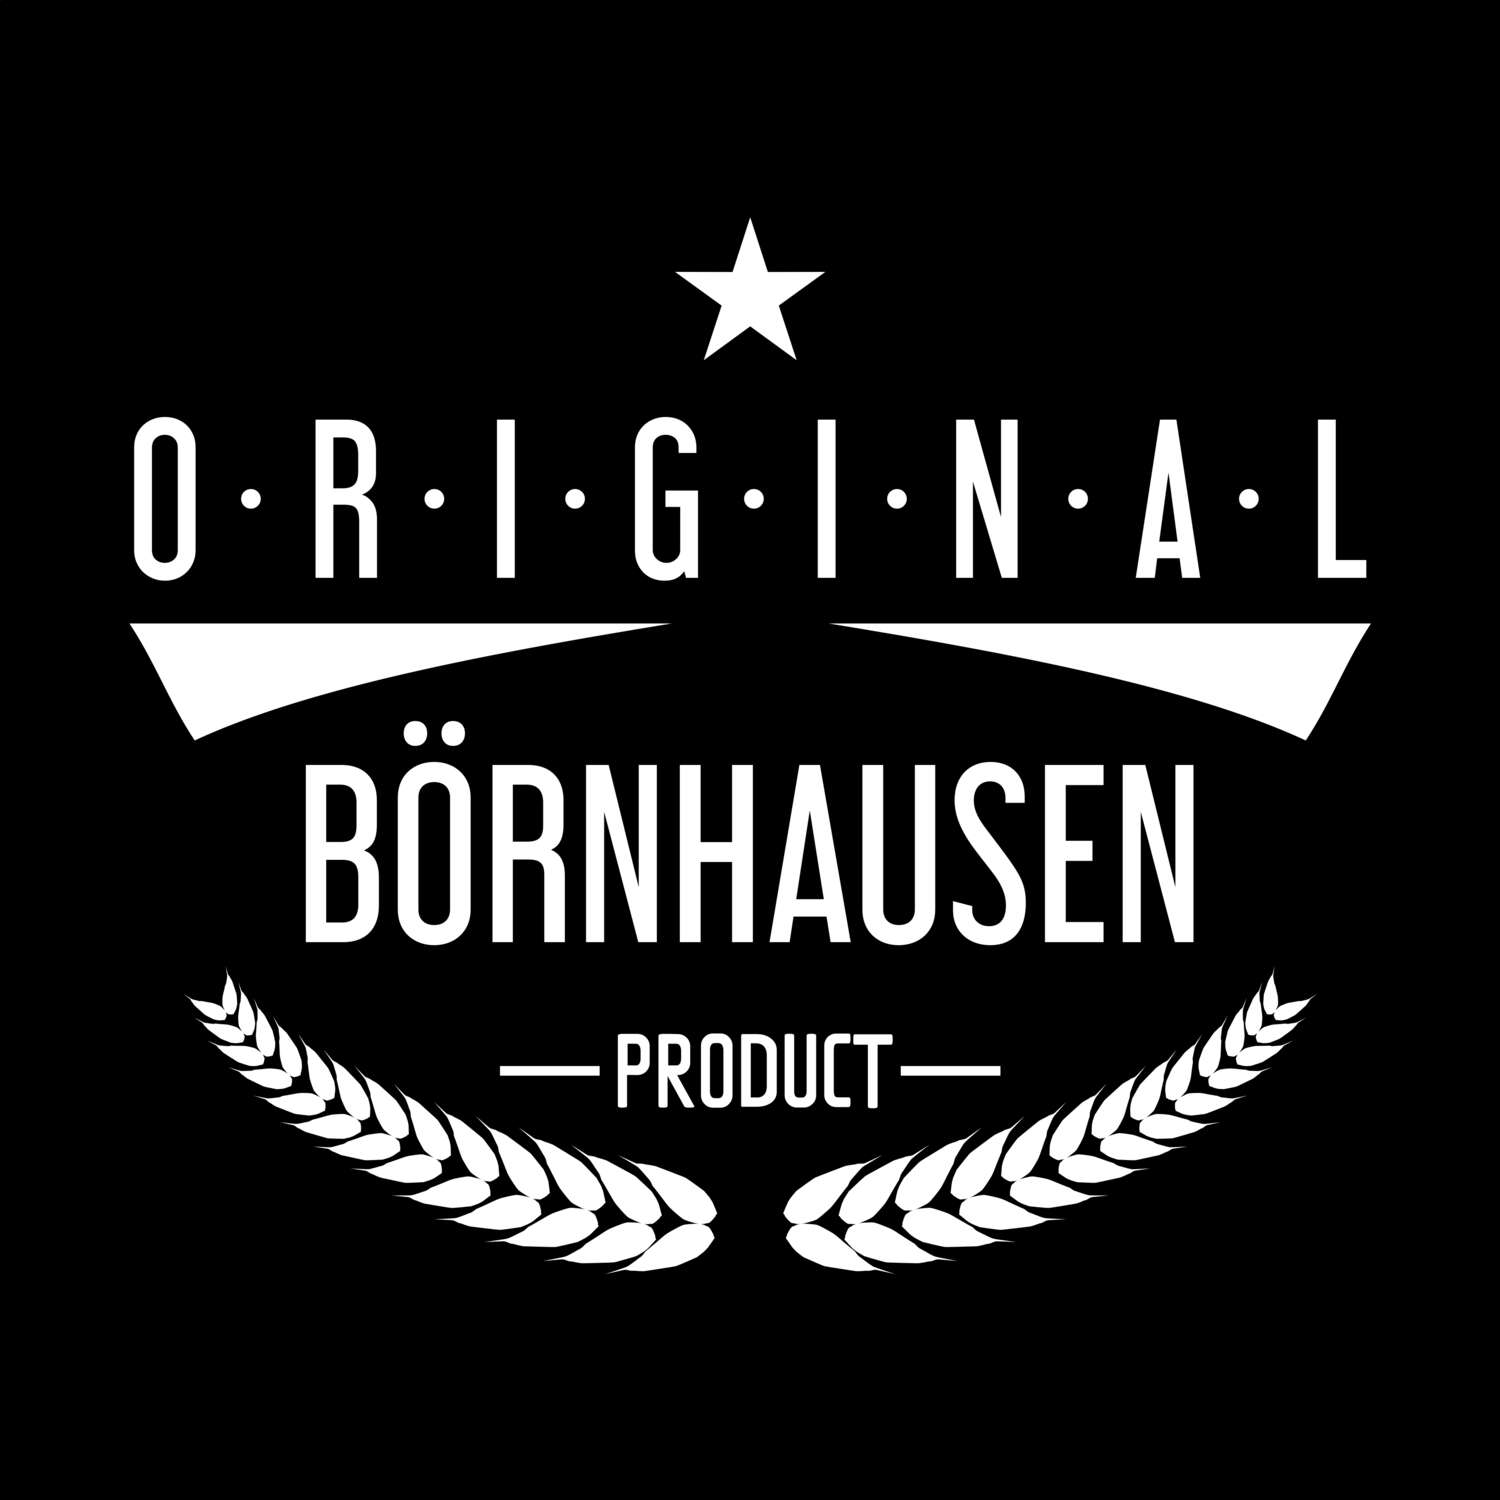 Börnhausen T-Shirt »Original Product«